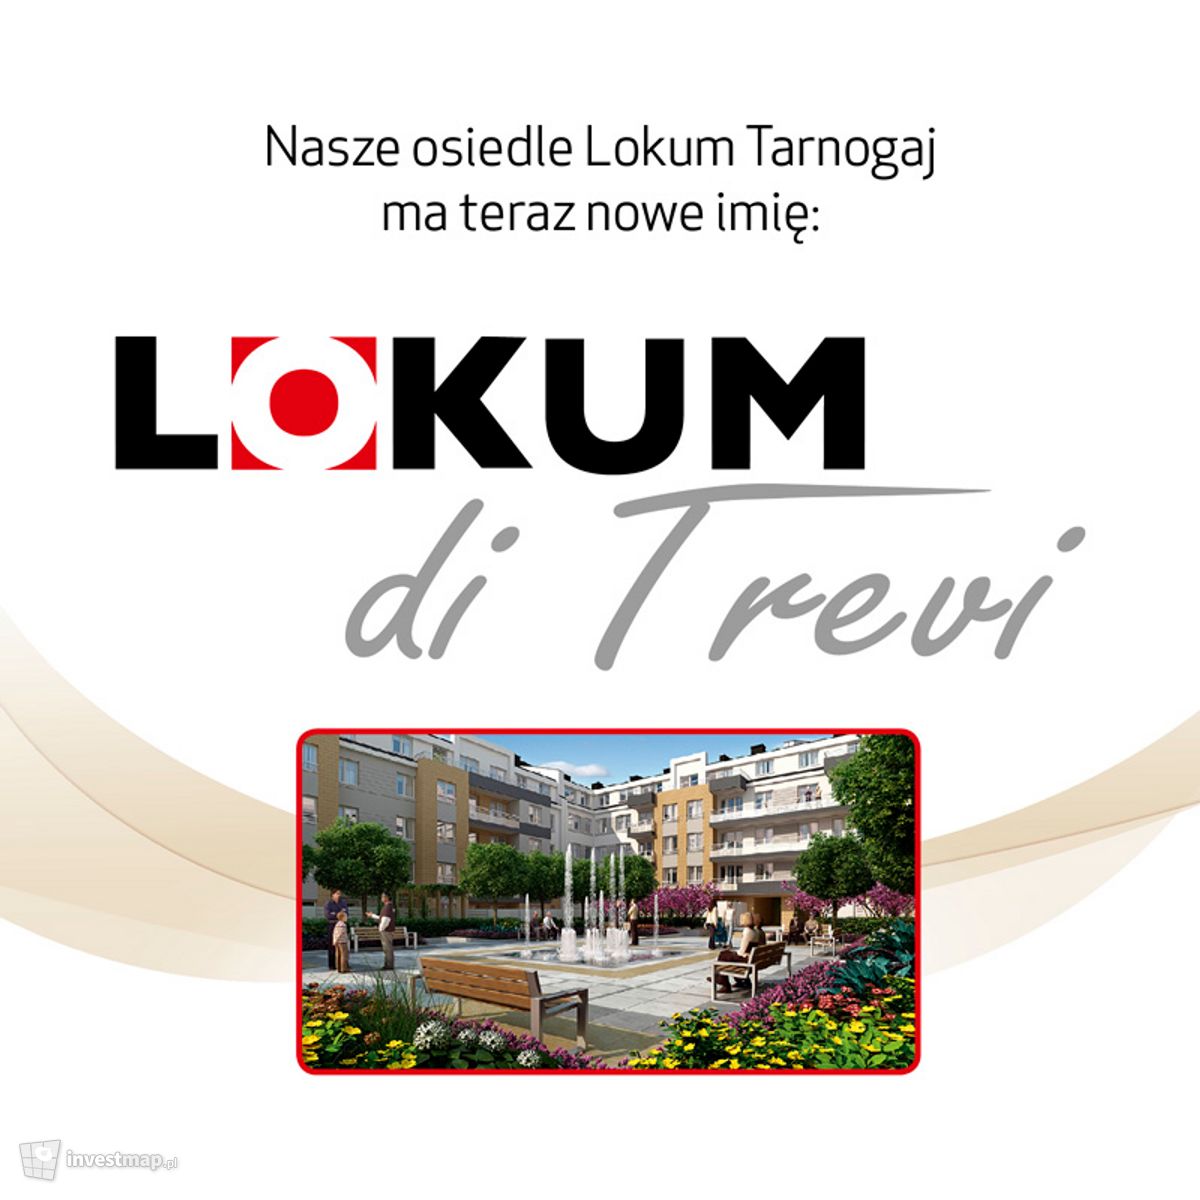 Wizualizacja Lokum di Trevi dodał MatKoz 